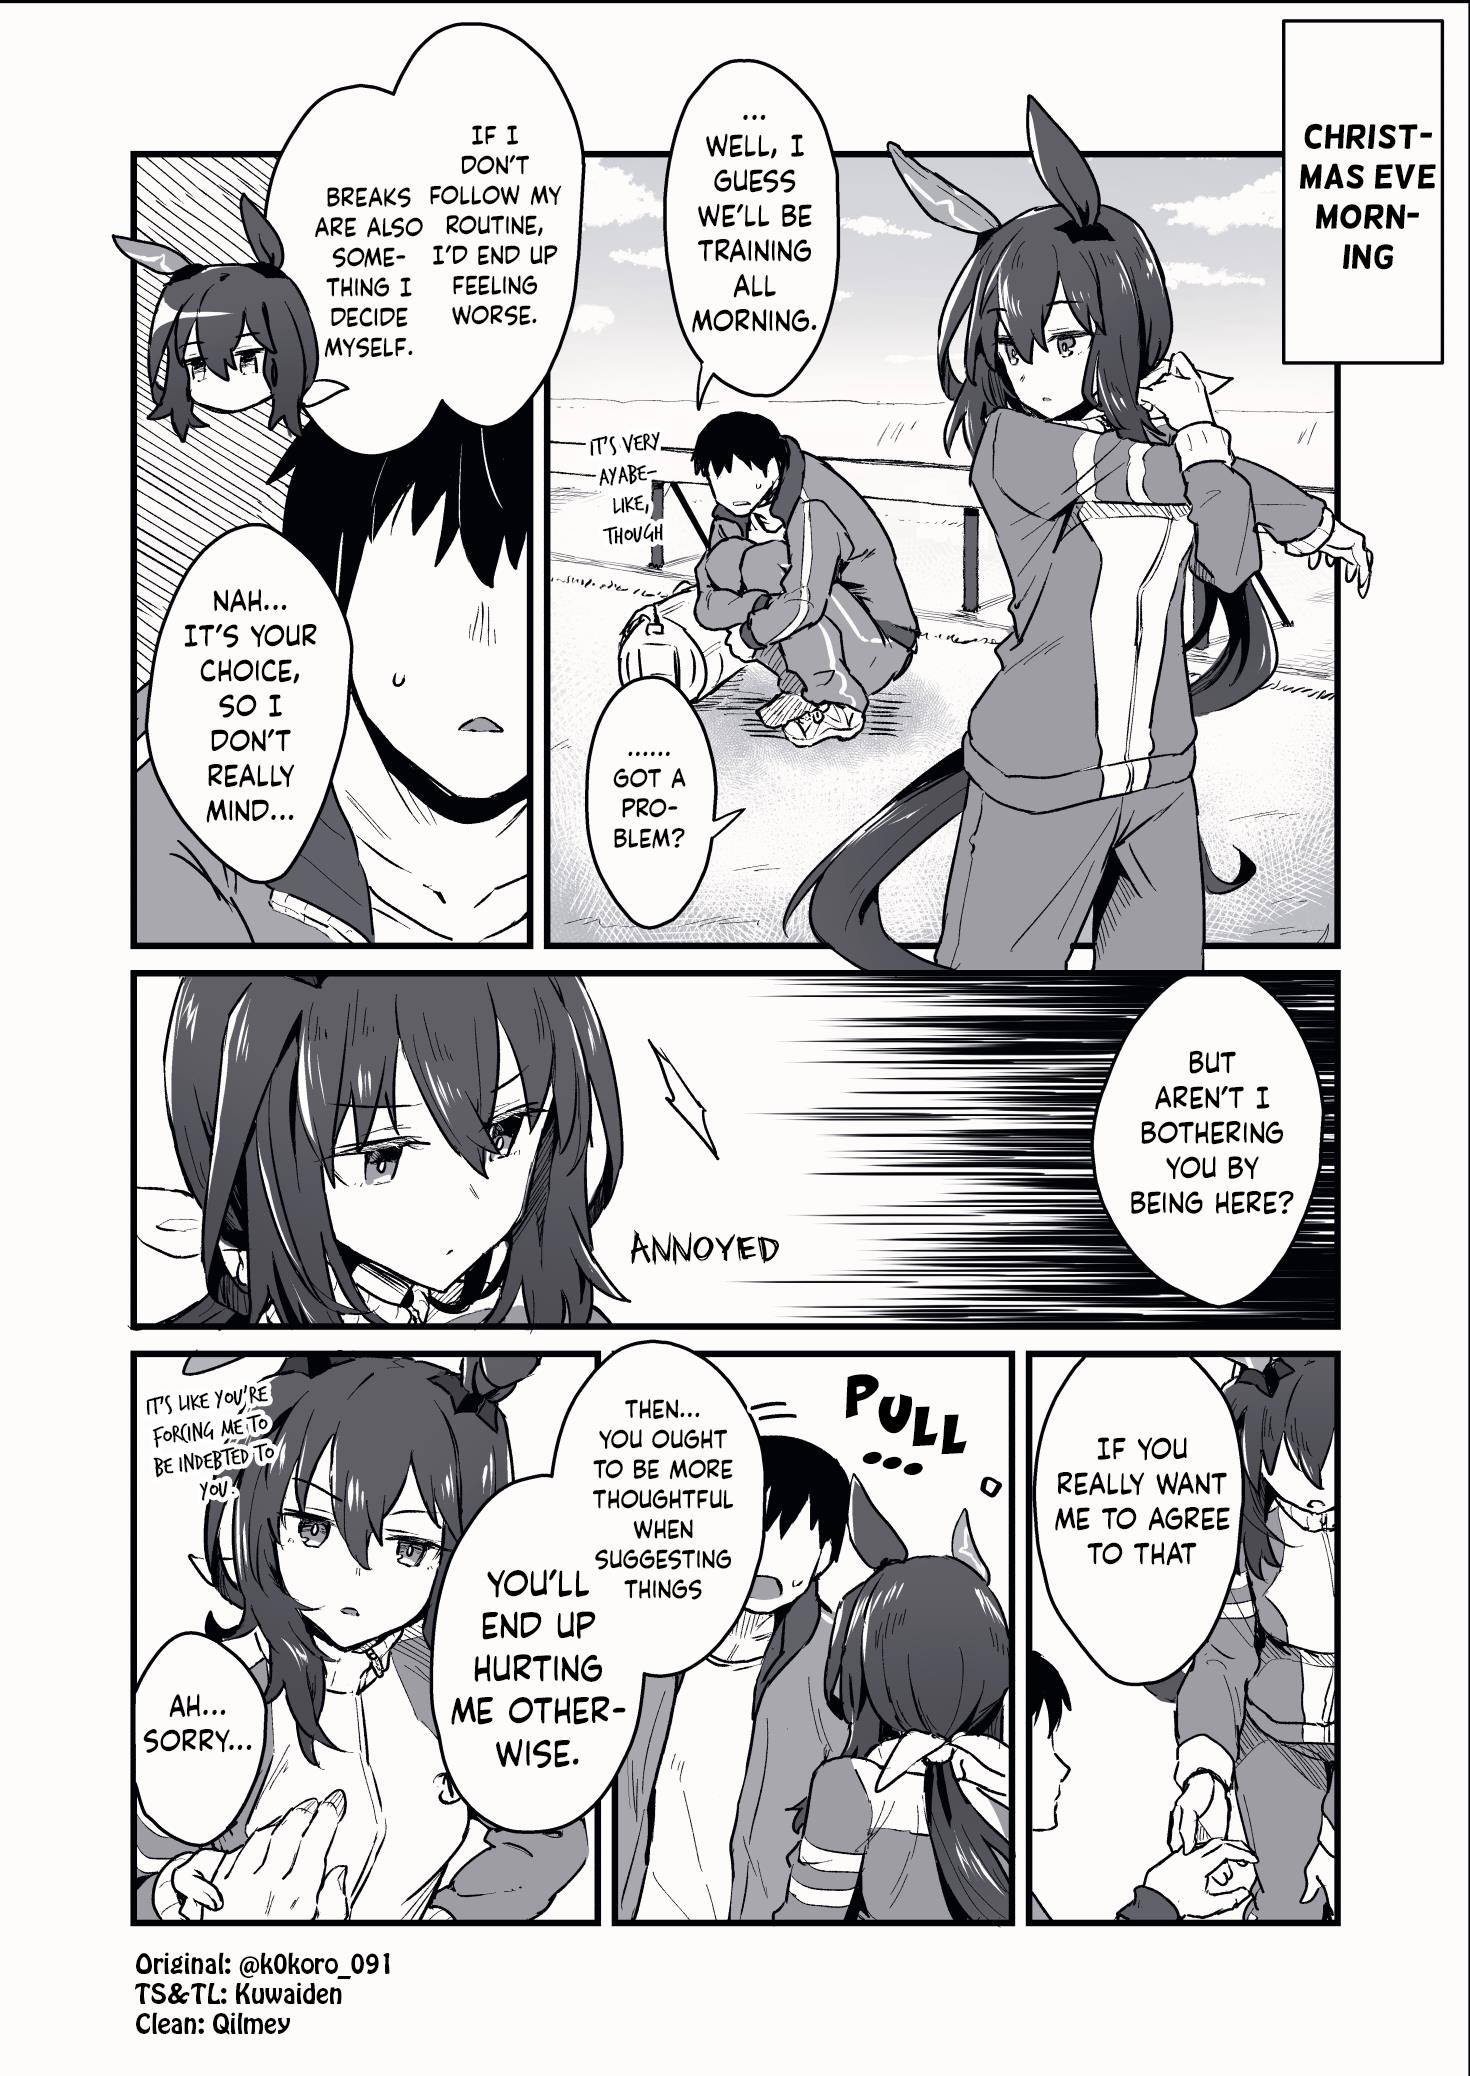 Kokoro-Sensei's Umamusume Shorts (Doujinshi) - Page 2